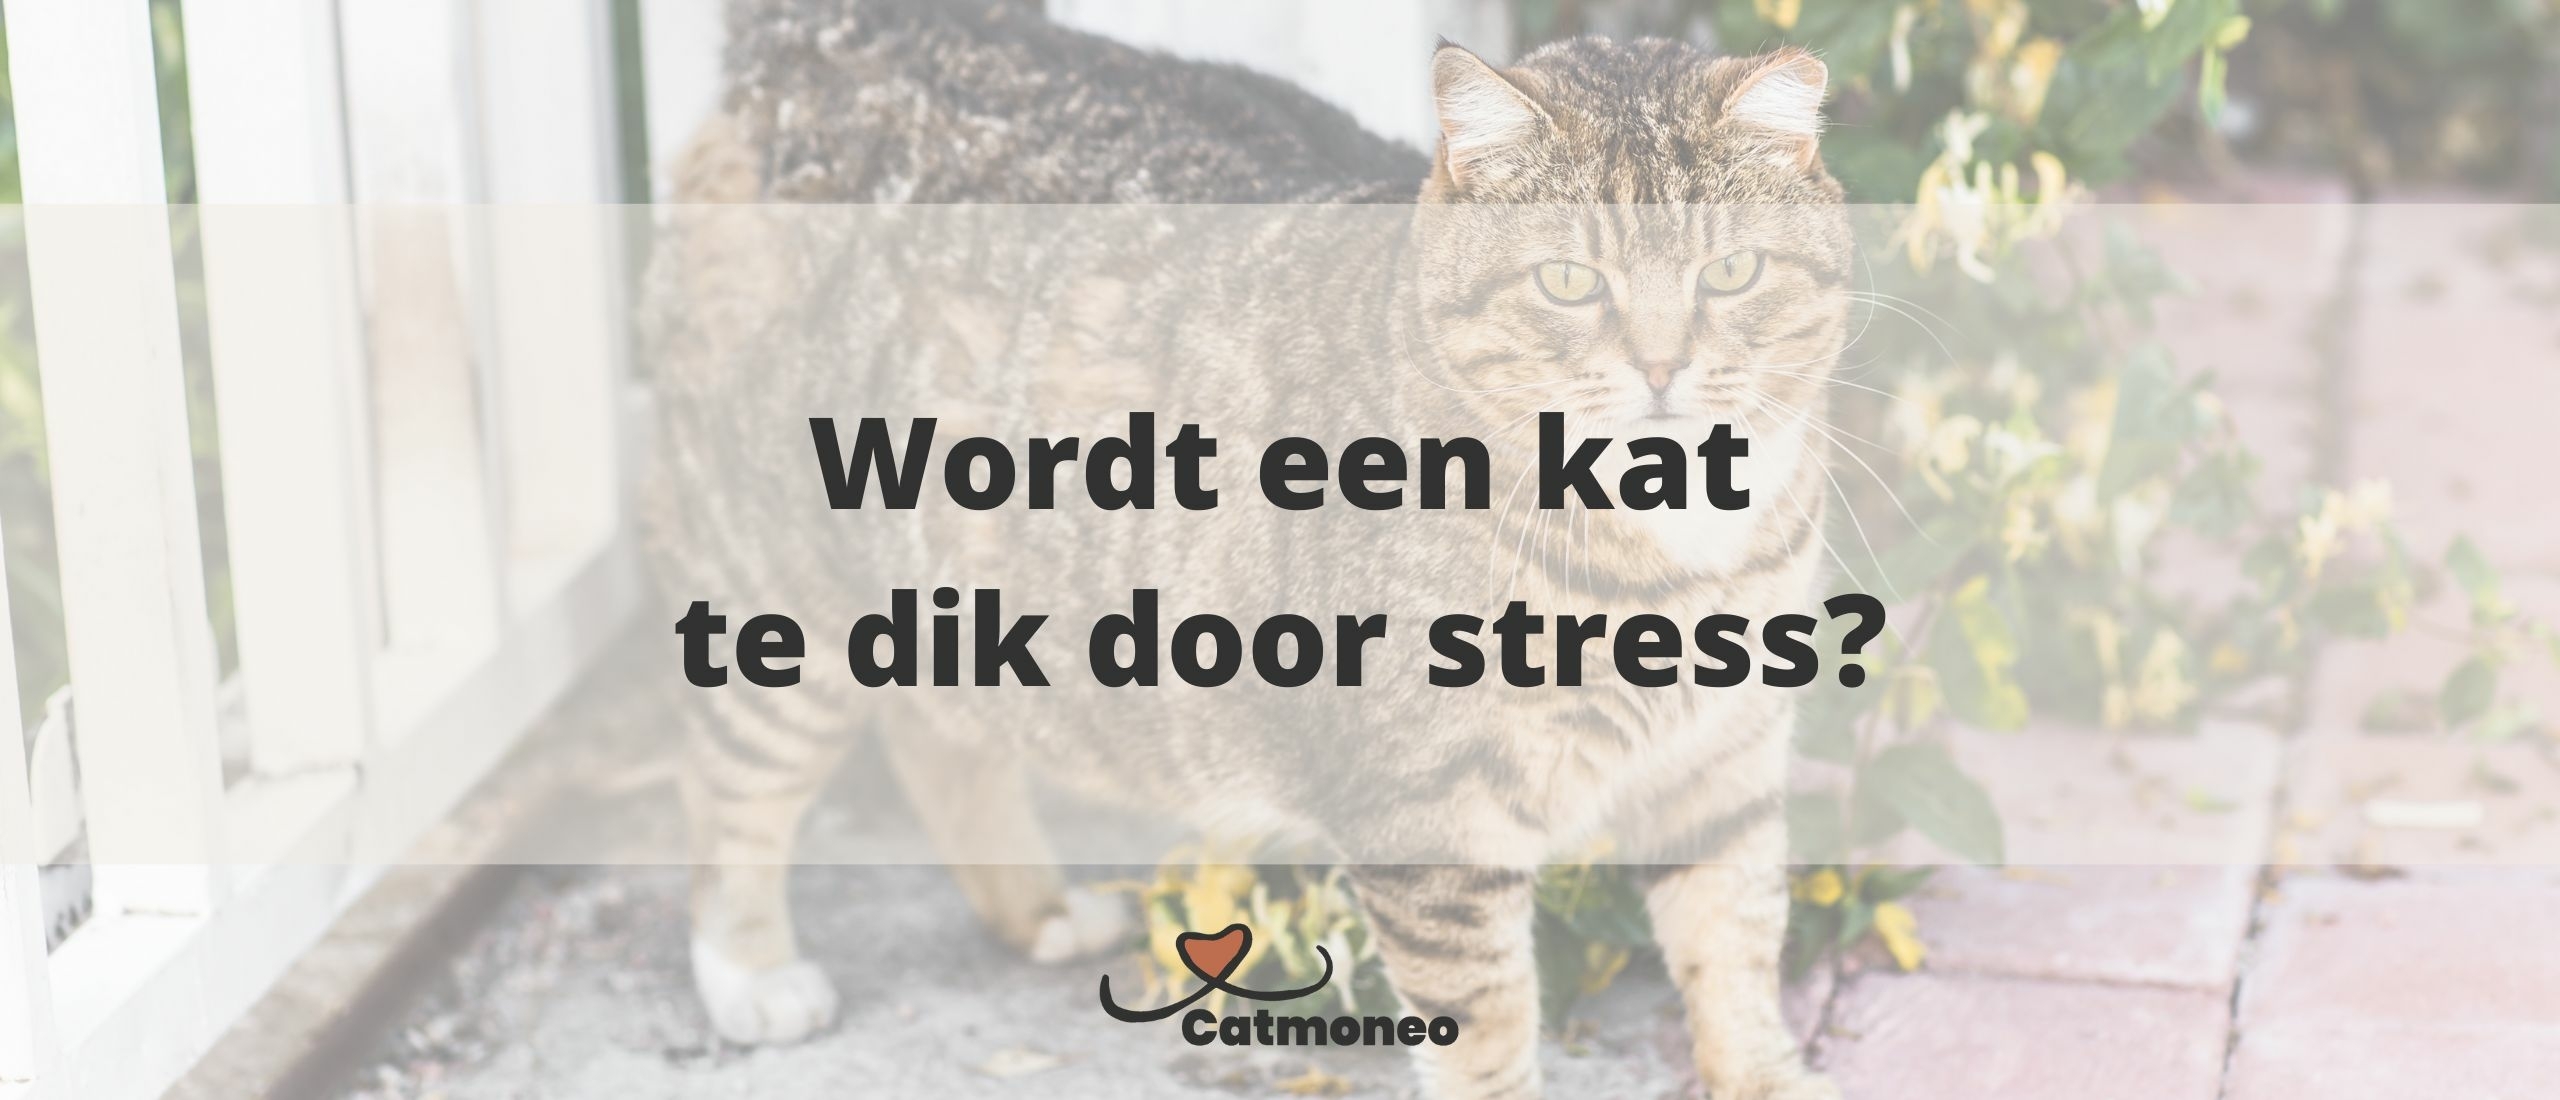 Kan een kat dik worden door stress?